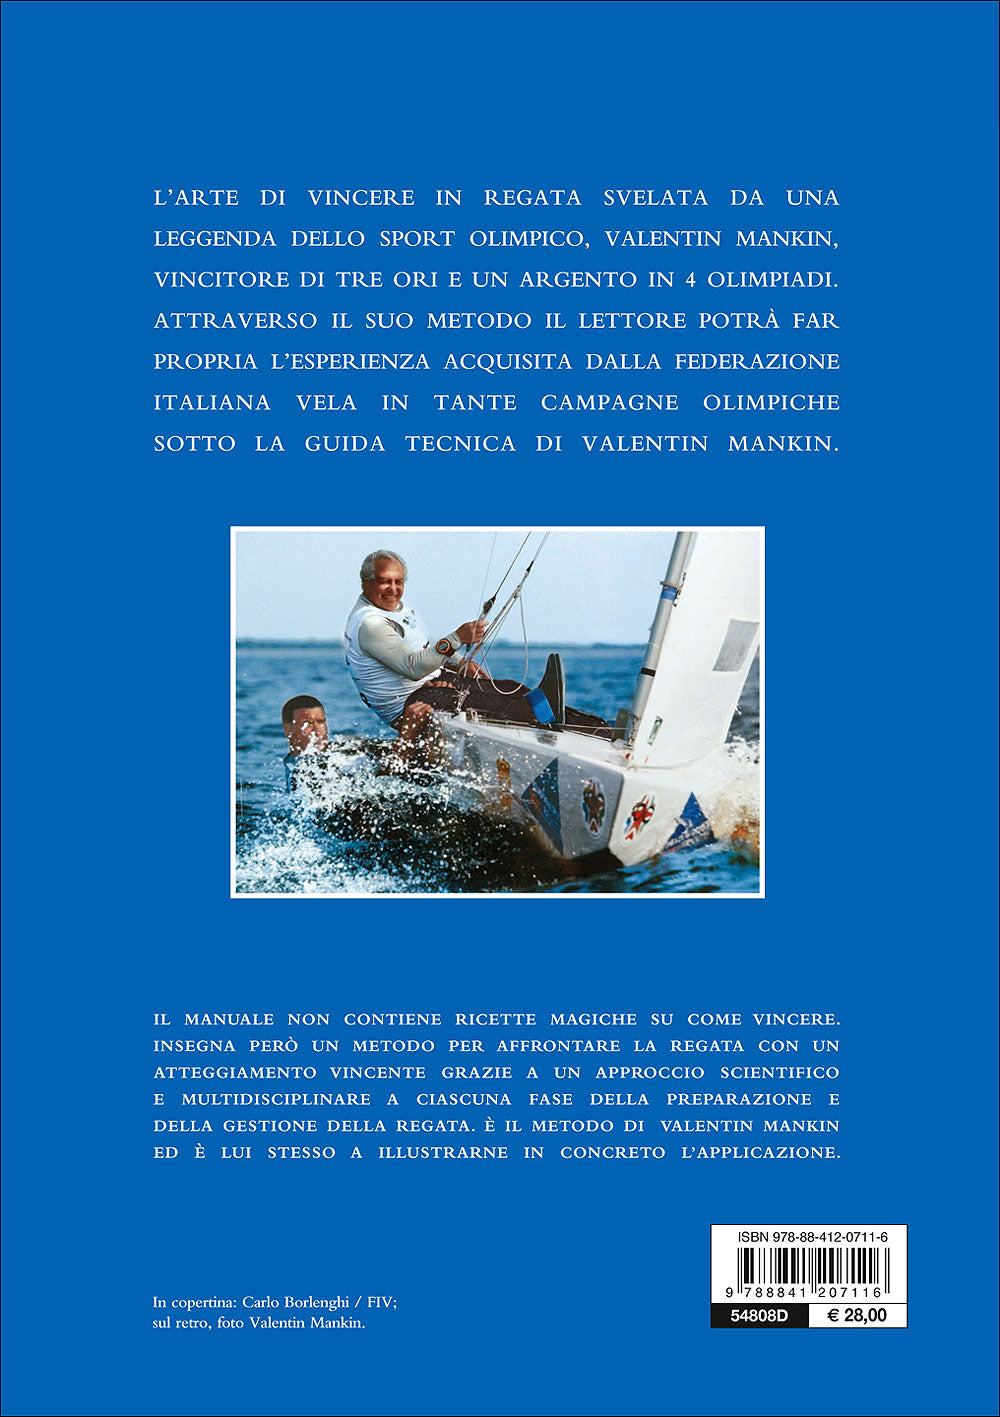 Manuale della vela agonistica::Imbarcazione ed equipaggio, preparazione e messa a punto, strategia e tattica di regata